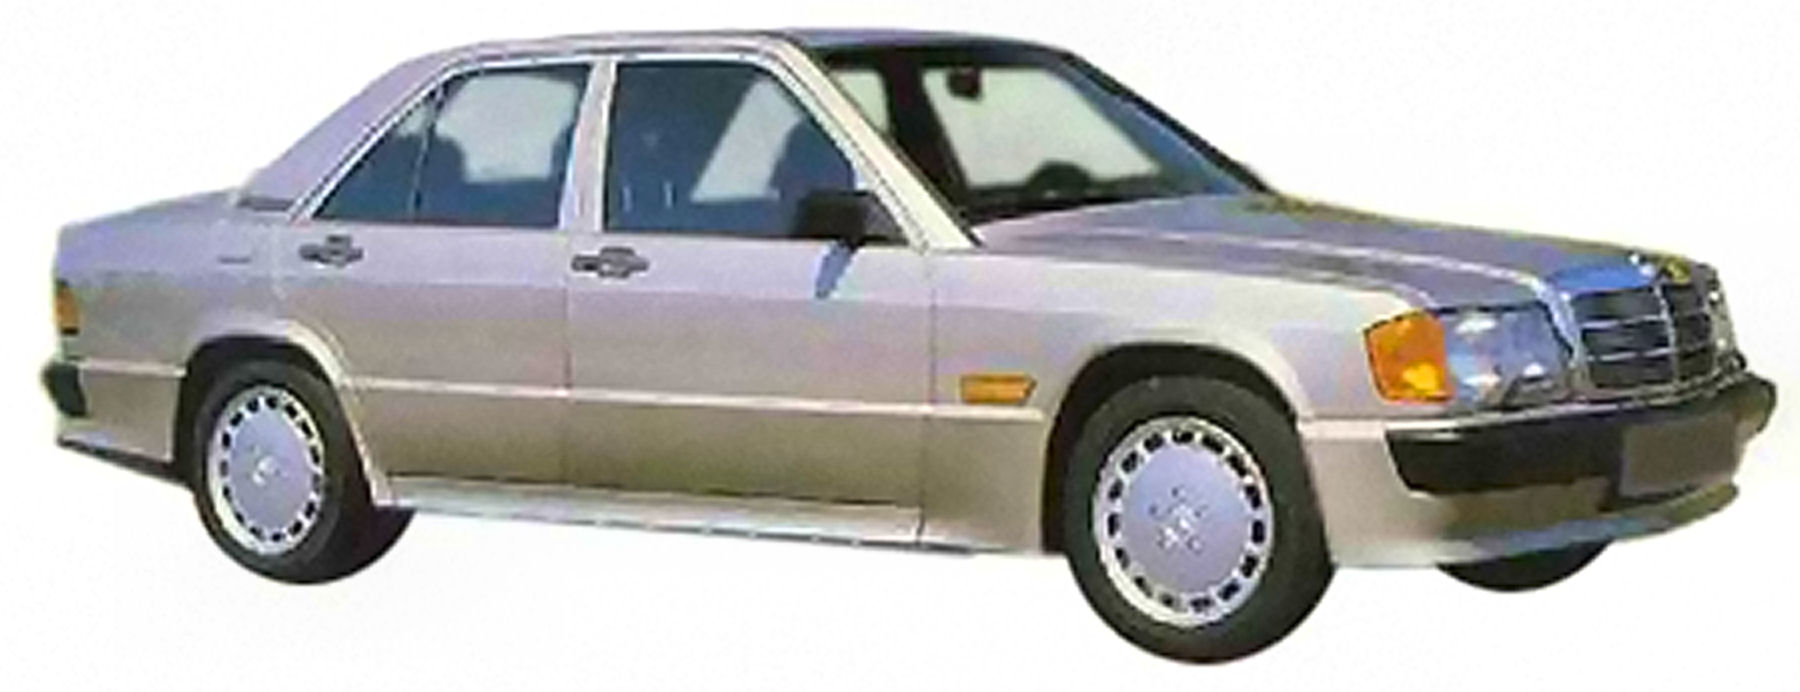 1994 W201 190E